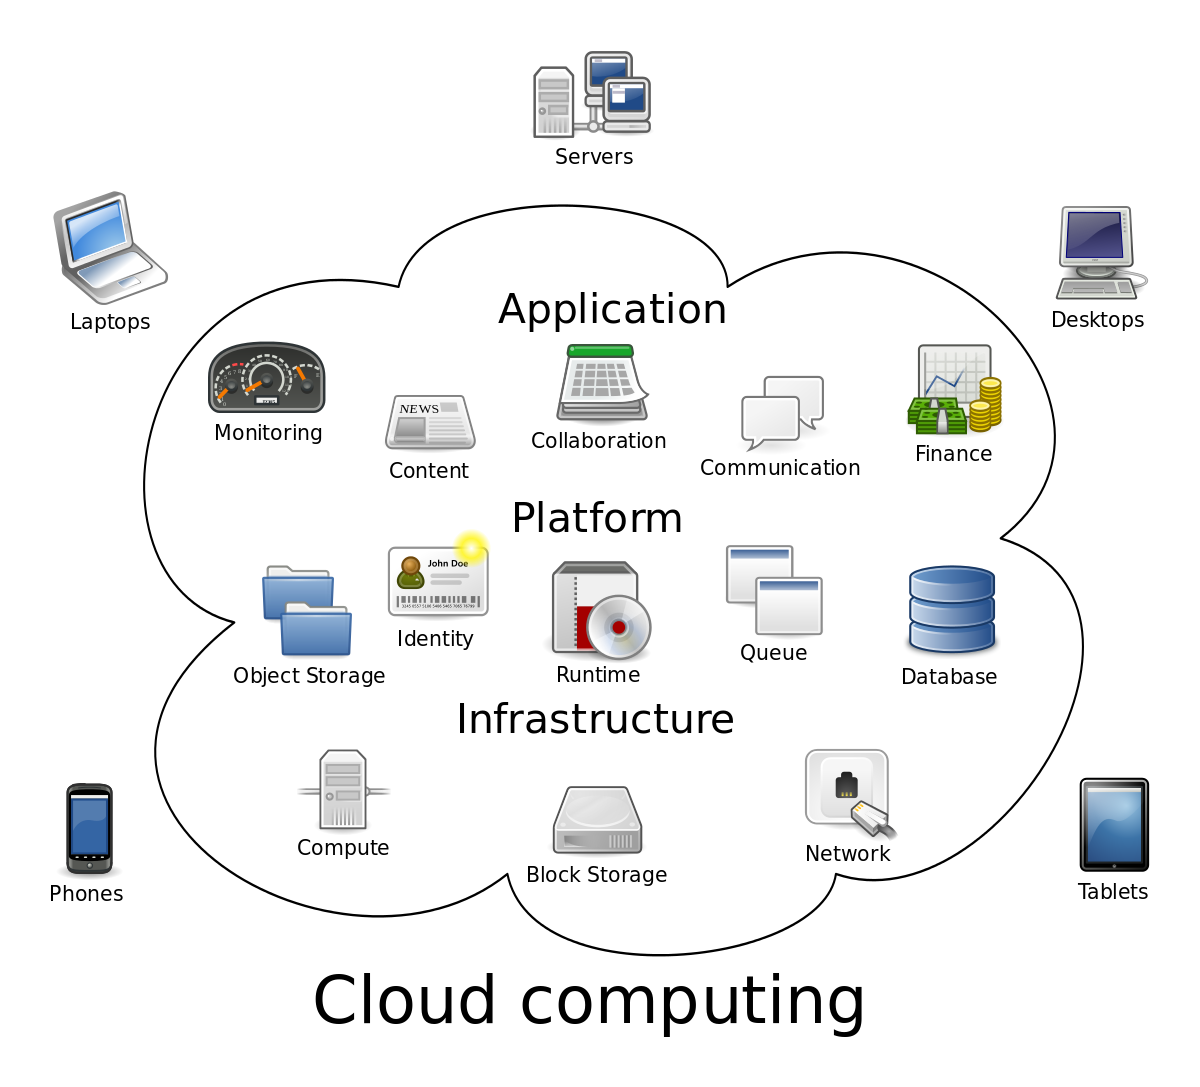 Cloud Computing Diagram